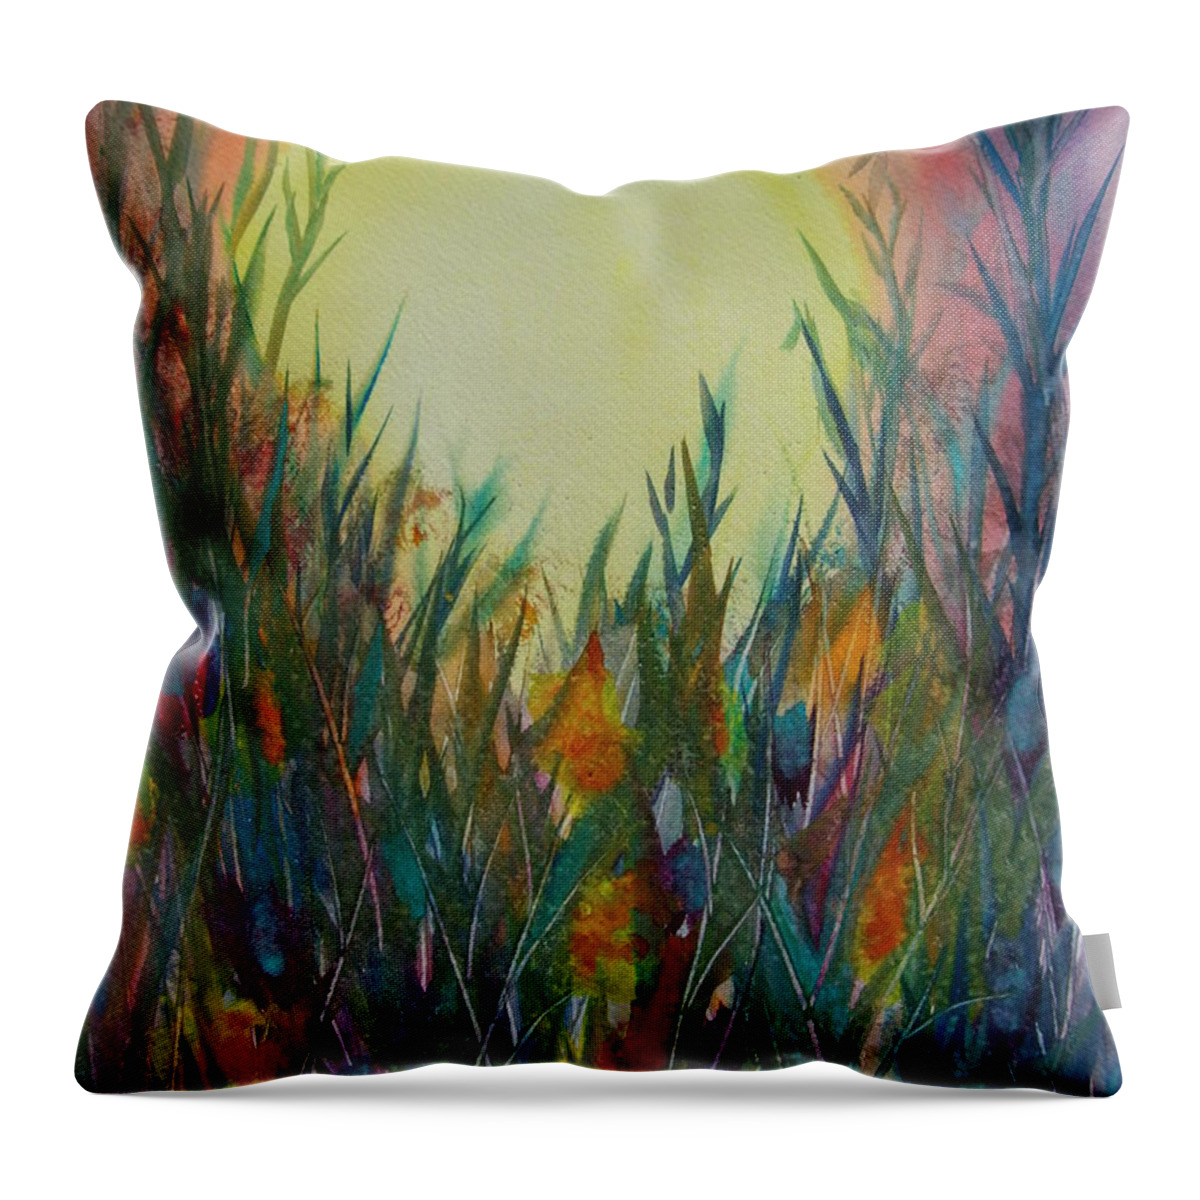 Kim Shuckhart Gunns Throw Pillow featuring the painting Daydreams by Kim Shuckhart Gunns